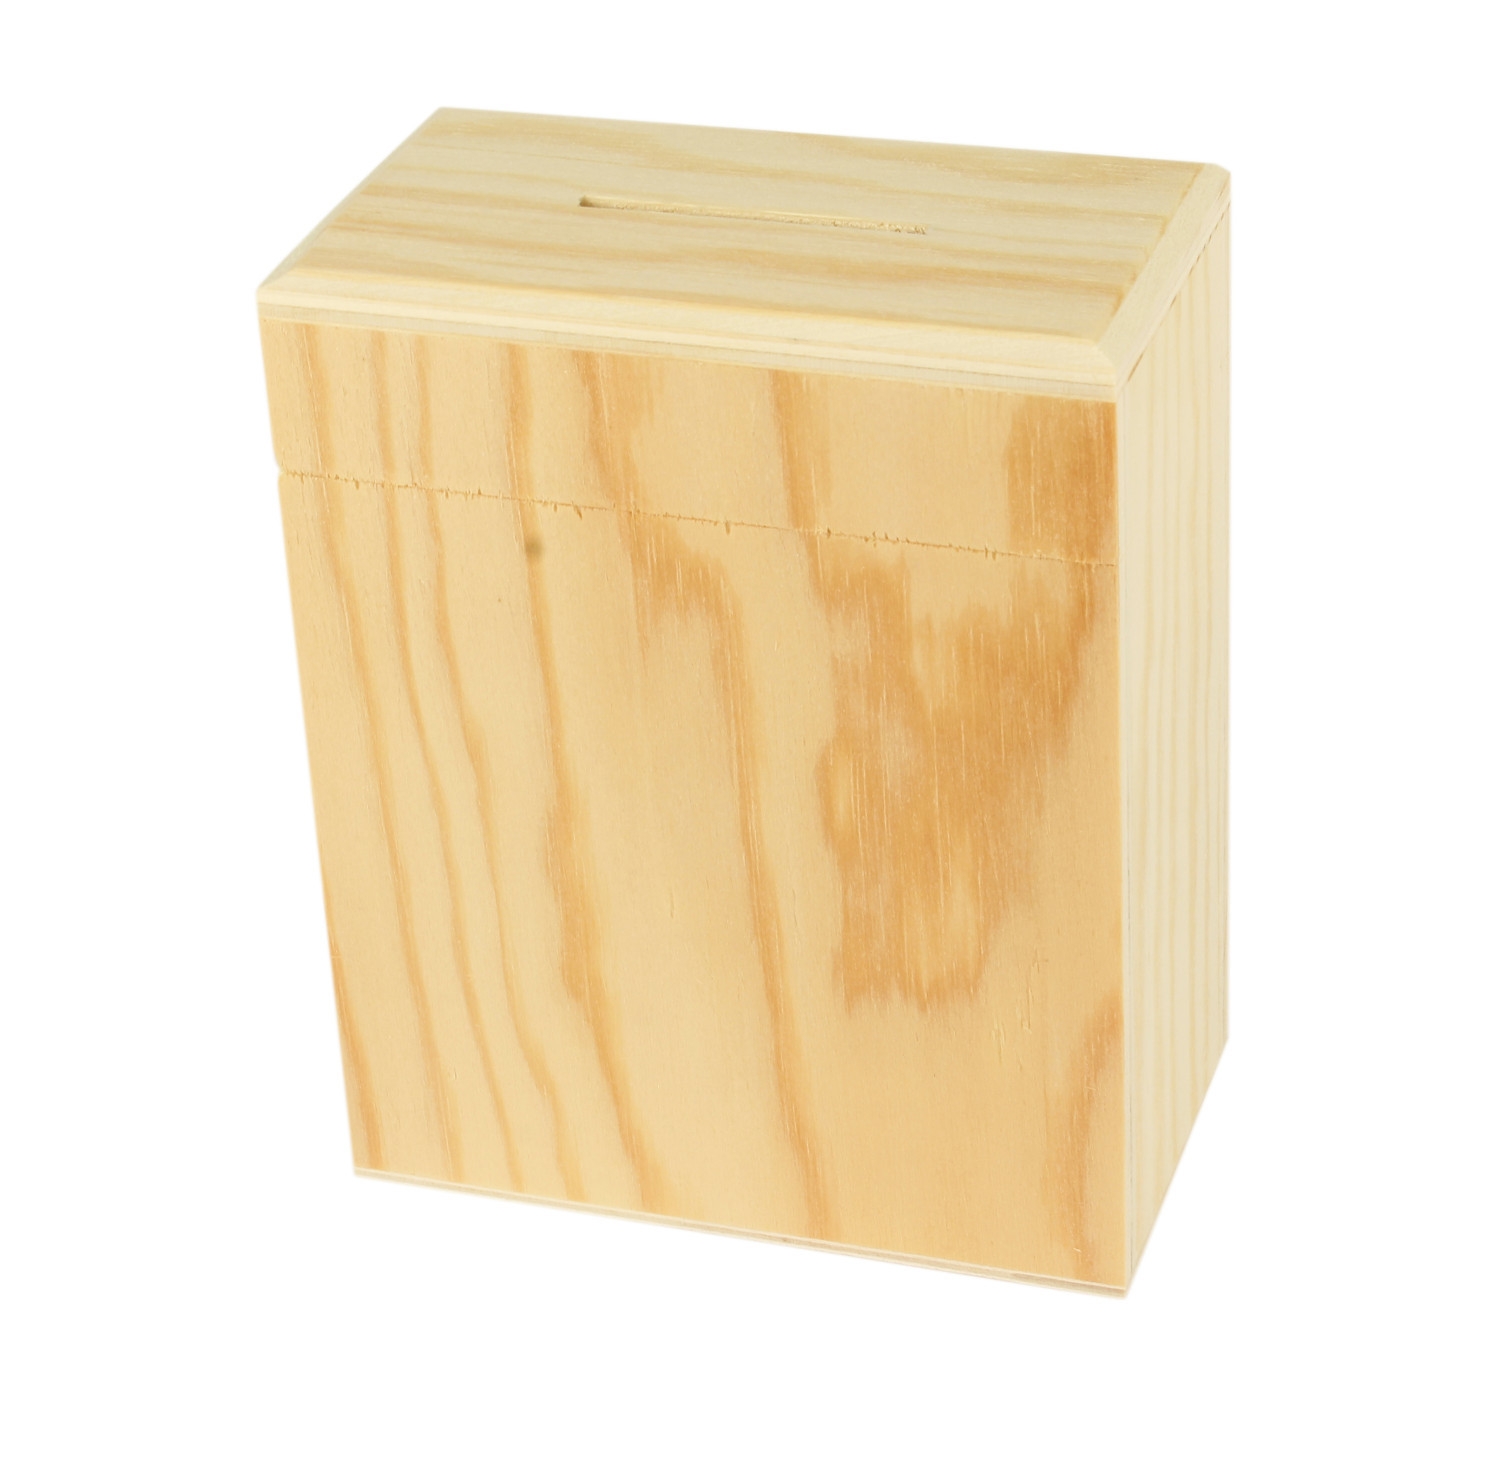 Tirelire en bois Simple et efficace 13 x 10,5 x 6 cm - MegaCrea DIY ref 7100